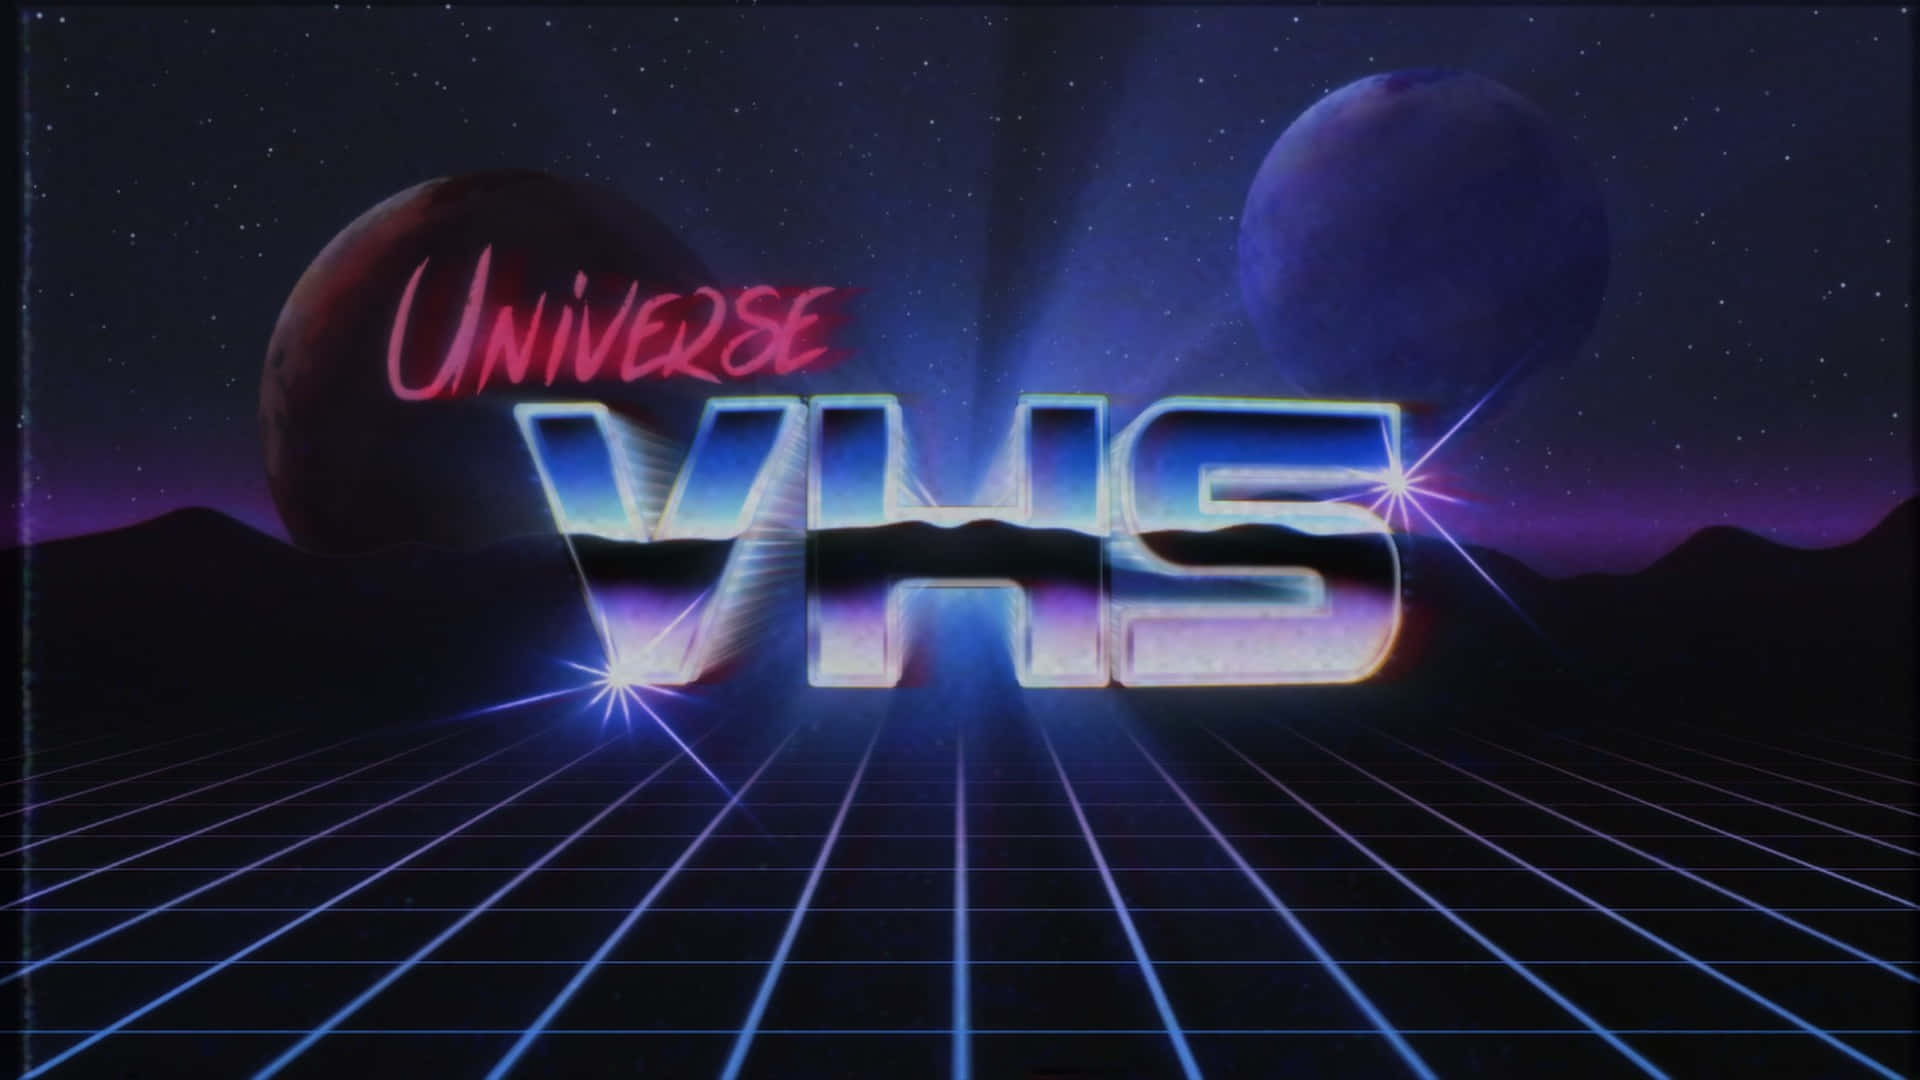 Universe Vhs - Vhs - Vhs - Vhs - Vhs -